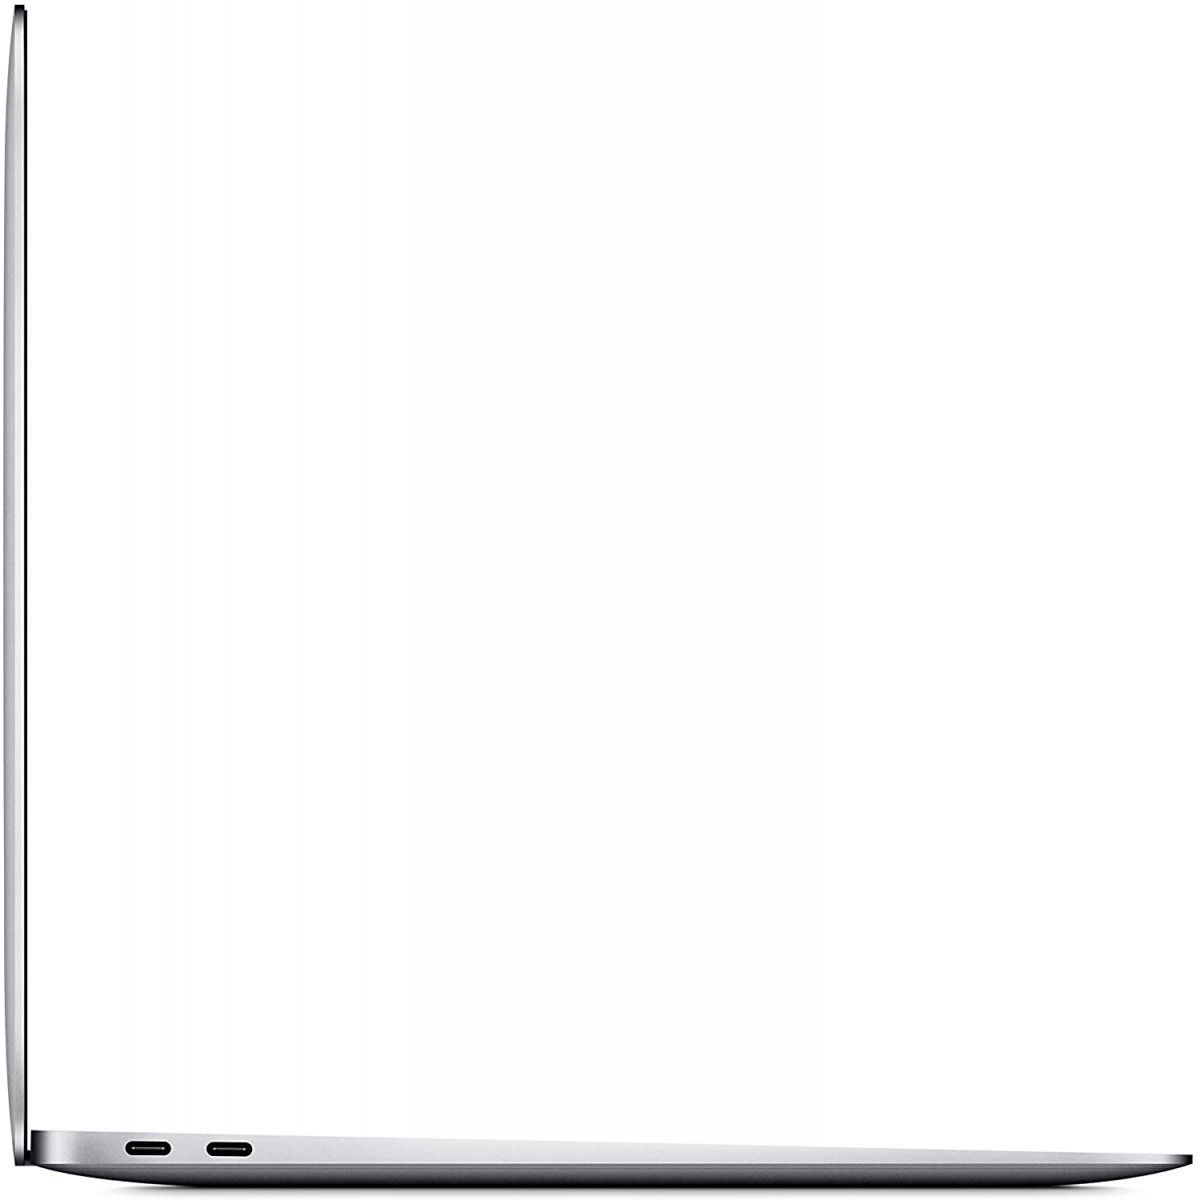 Thiết kế siêu mỏng nhẹ trên MacBook Air 2020 MWTK2